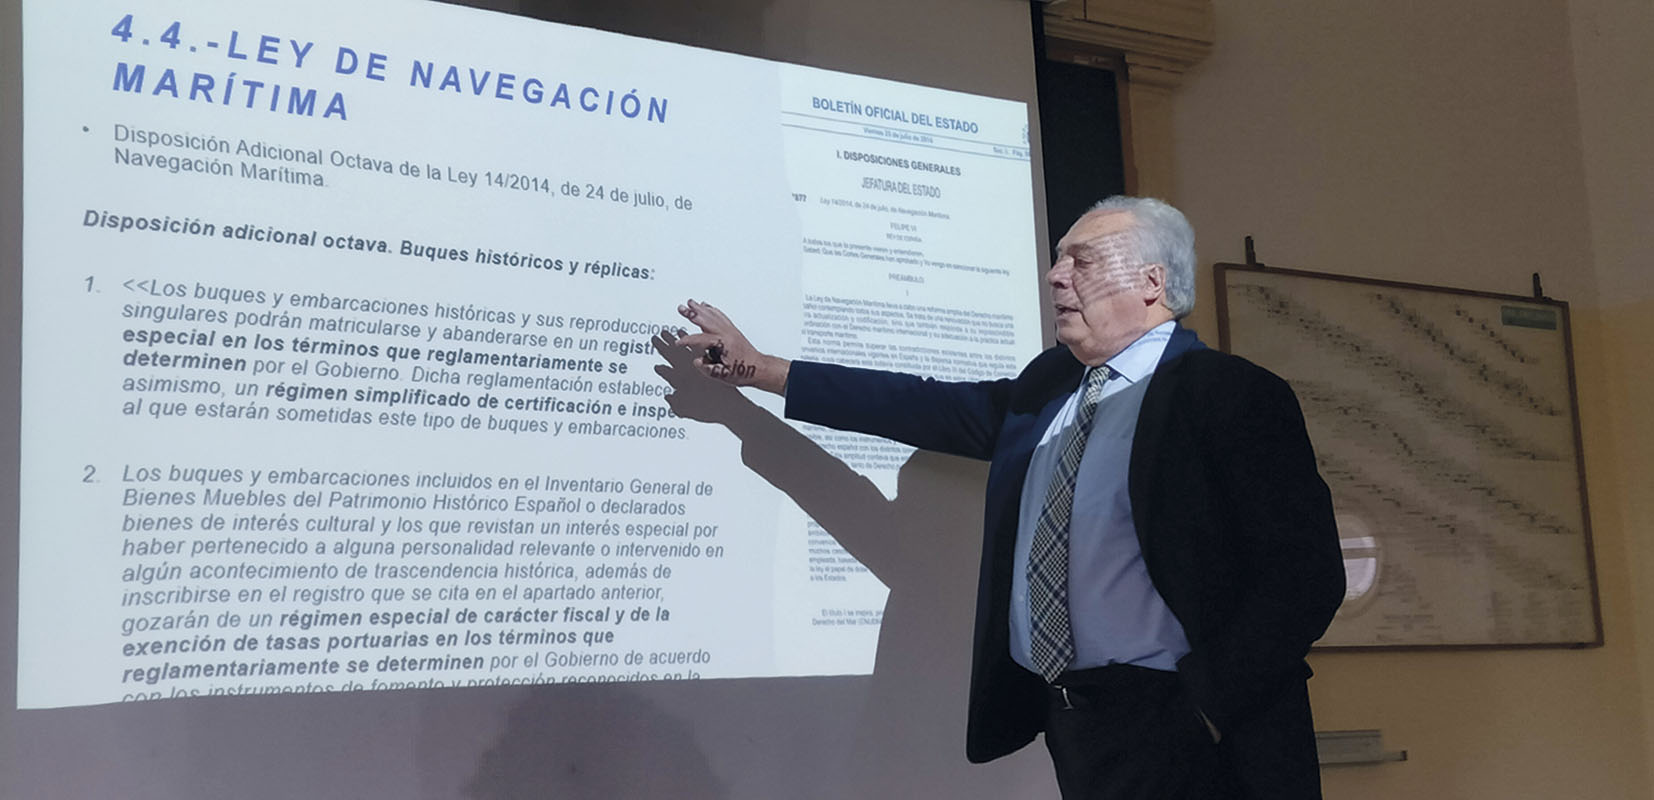 Jaime Rodrigo de Larrucea, ingeniero naval, en su ponencia sobre “La protección del patrimonio marítimo flotante español”.